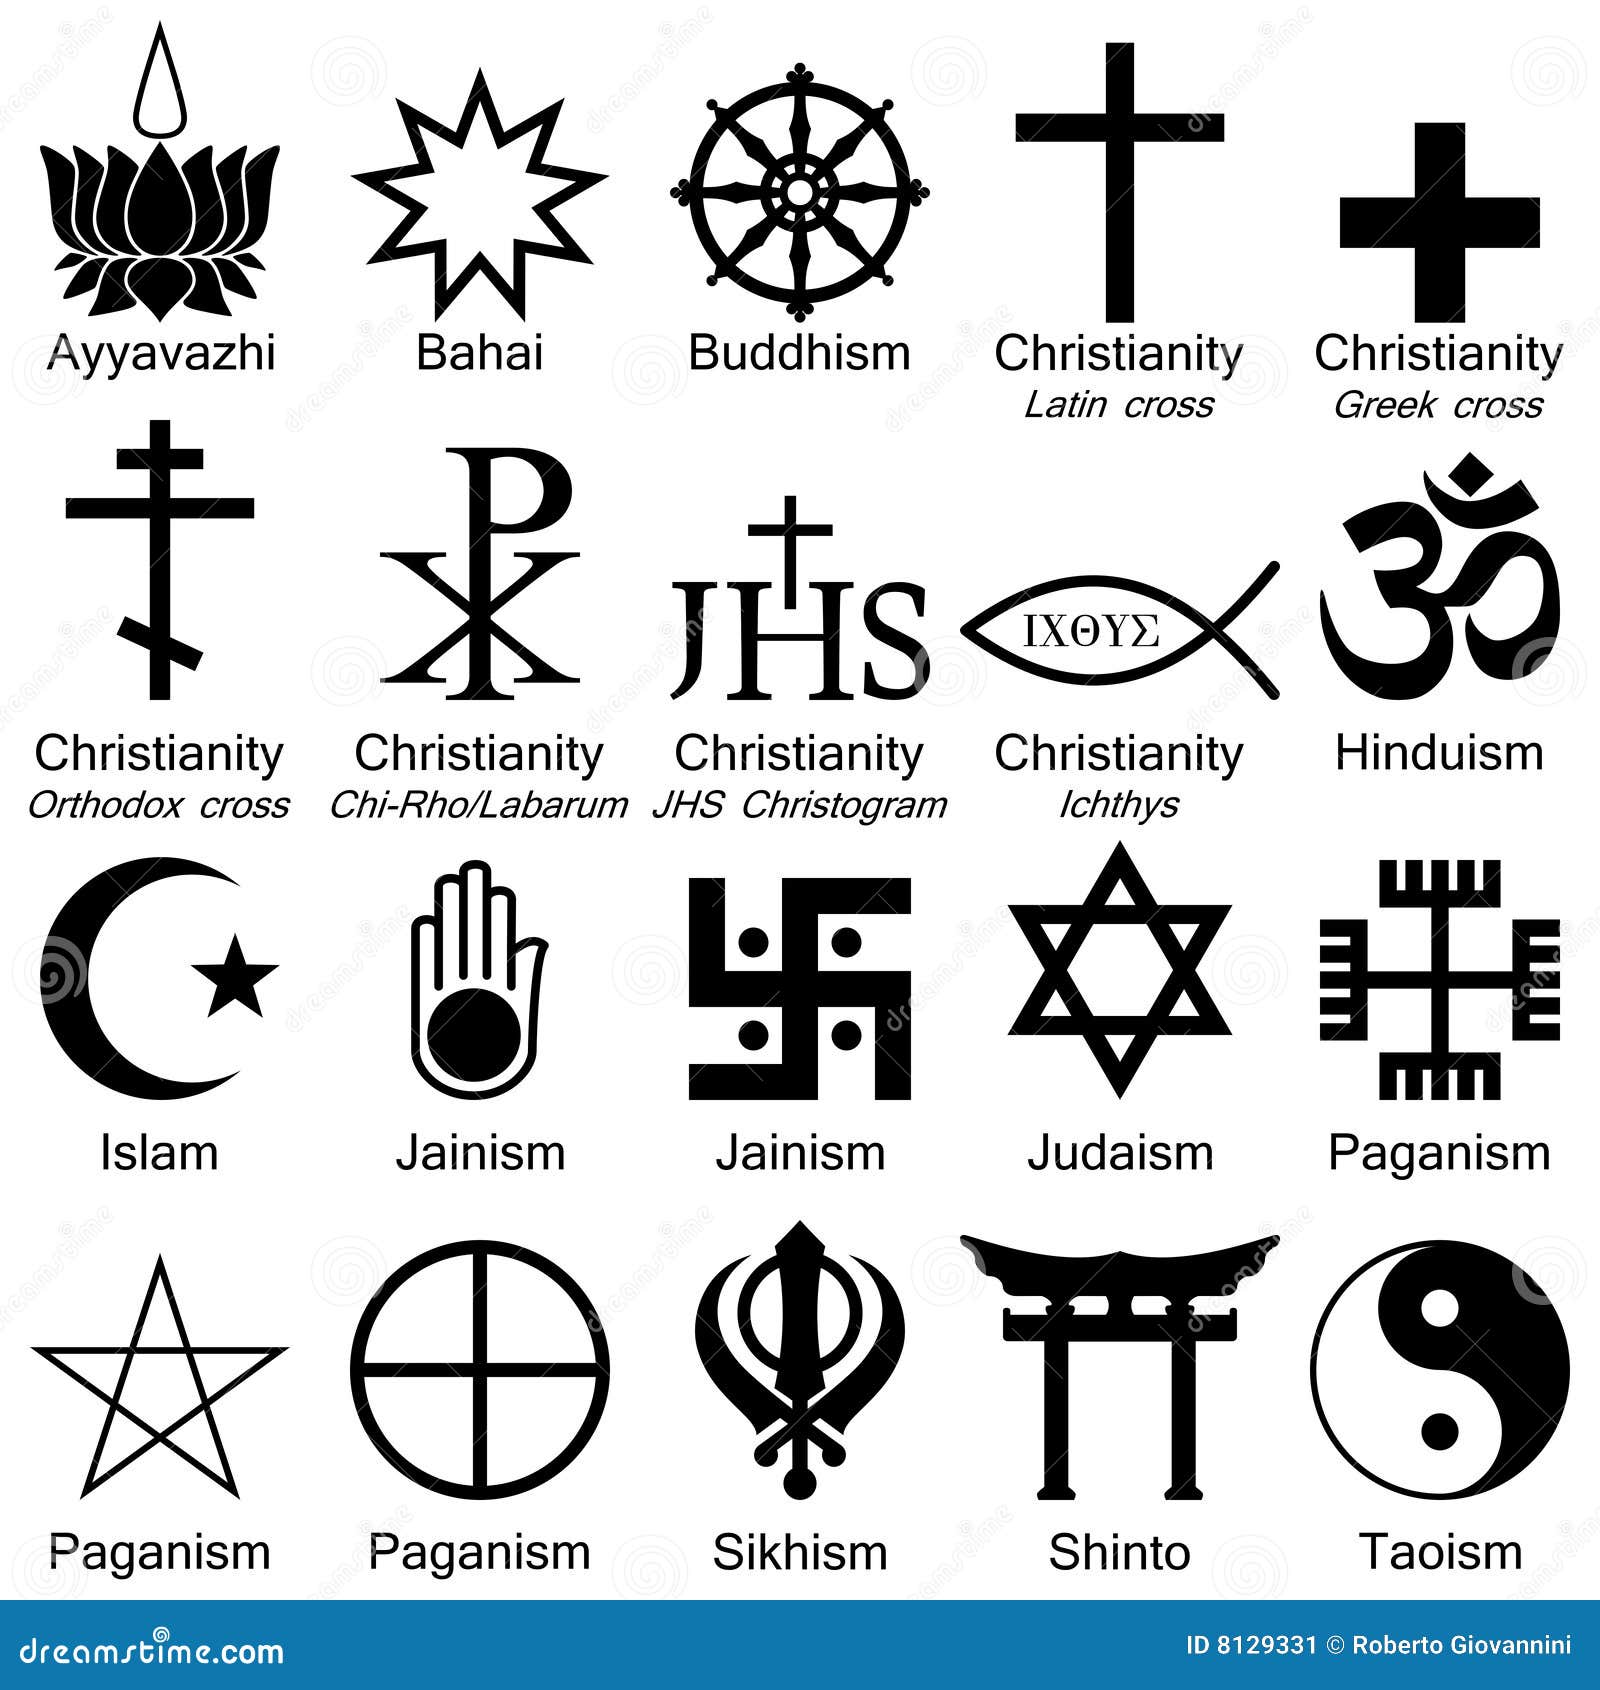 simboli-di-religione-del-mondo-8129331.jpg